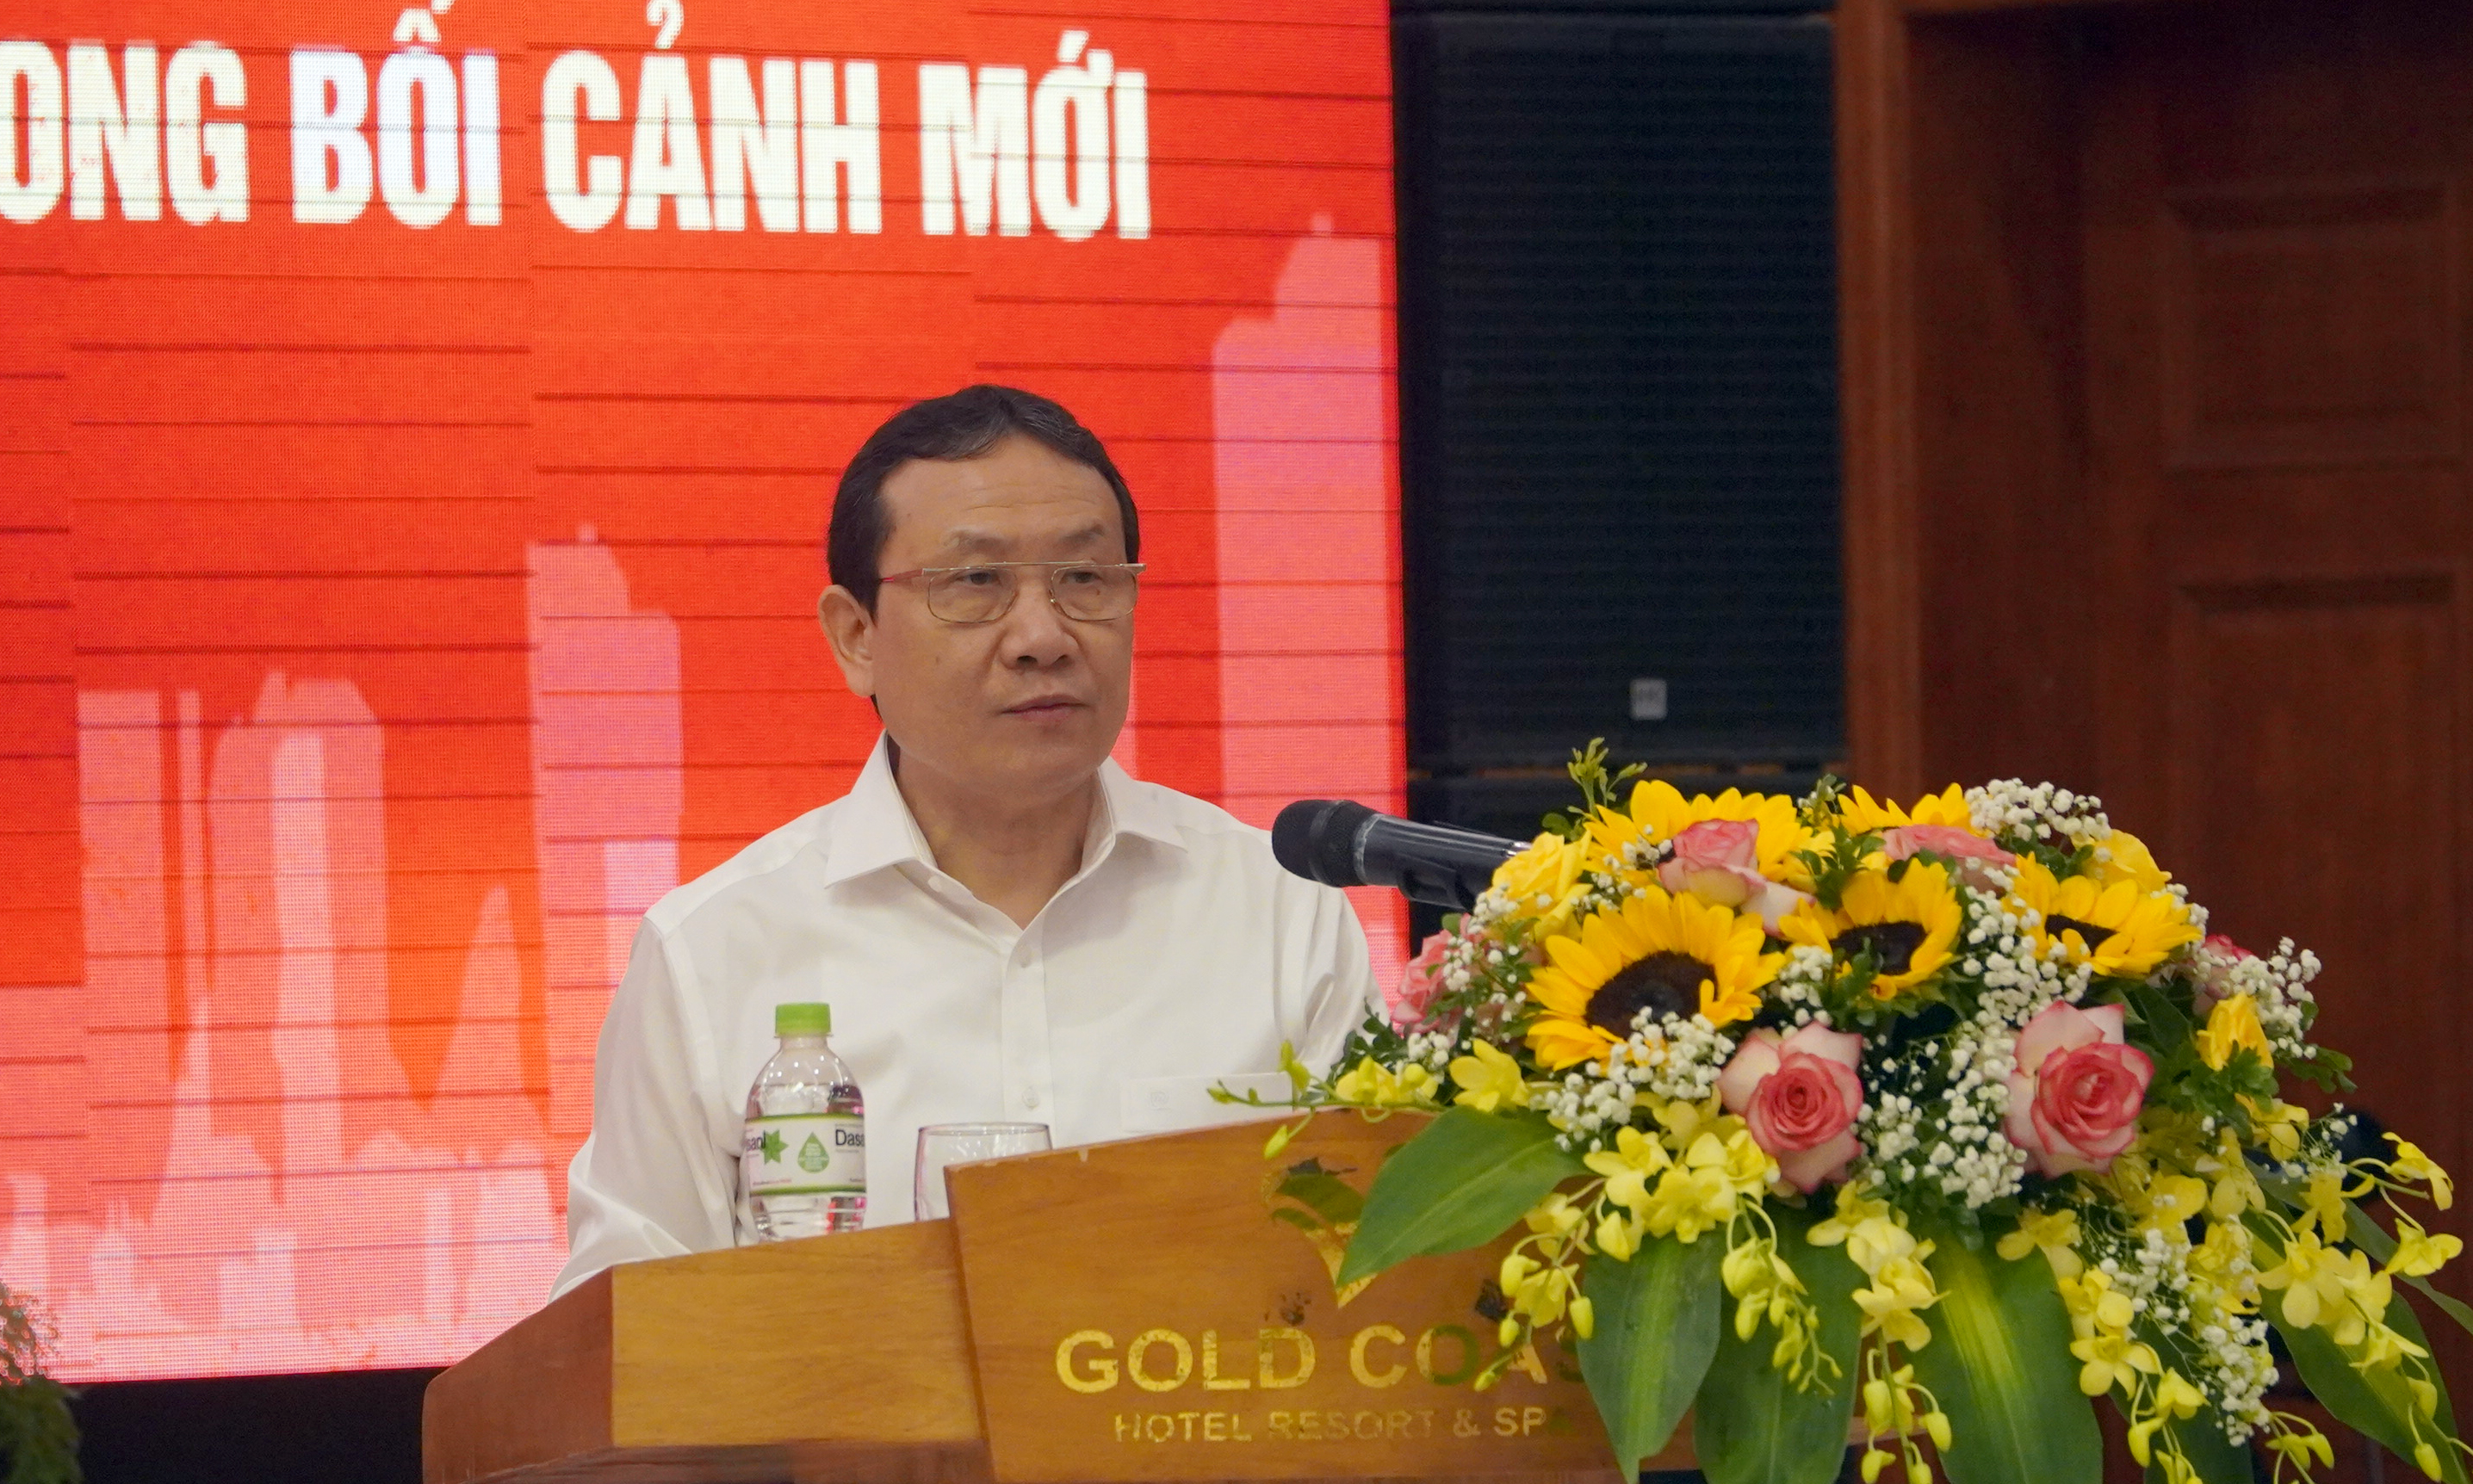 Đồng chí Nguyễn Hồng Sơn, Phó Trưởng Ban Kinh tế Trung ương, Phó Trưởng Ban Thường trực Ban Chỉ đạo tổng kết Nghị quyết 39 Trung ương phát biểu  đề dẫn